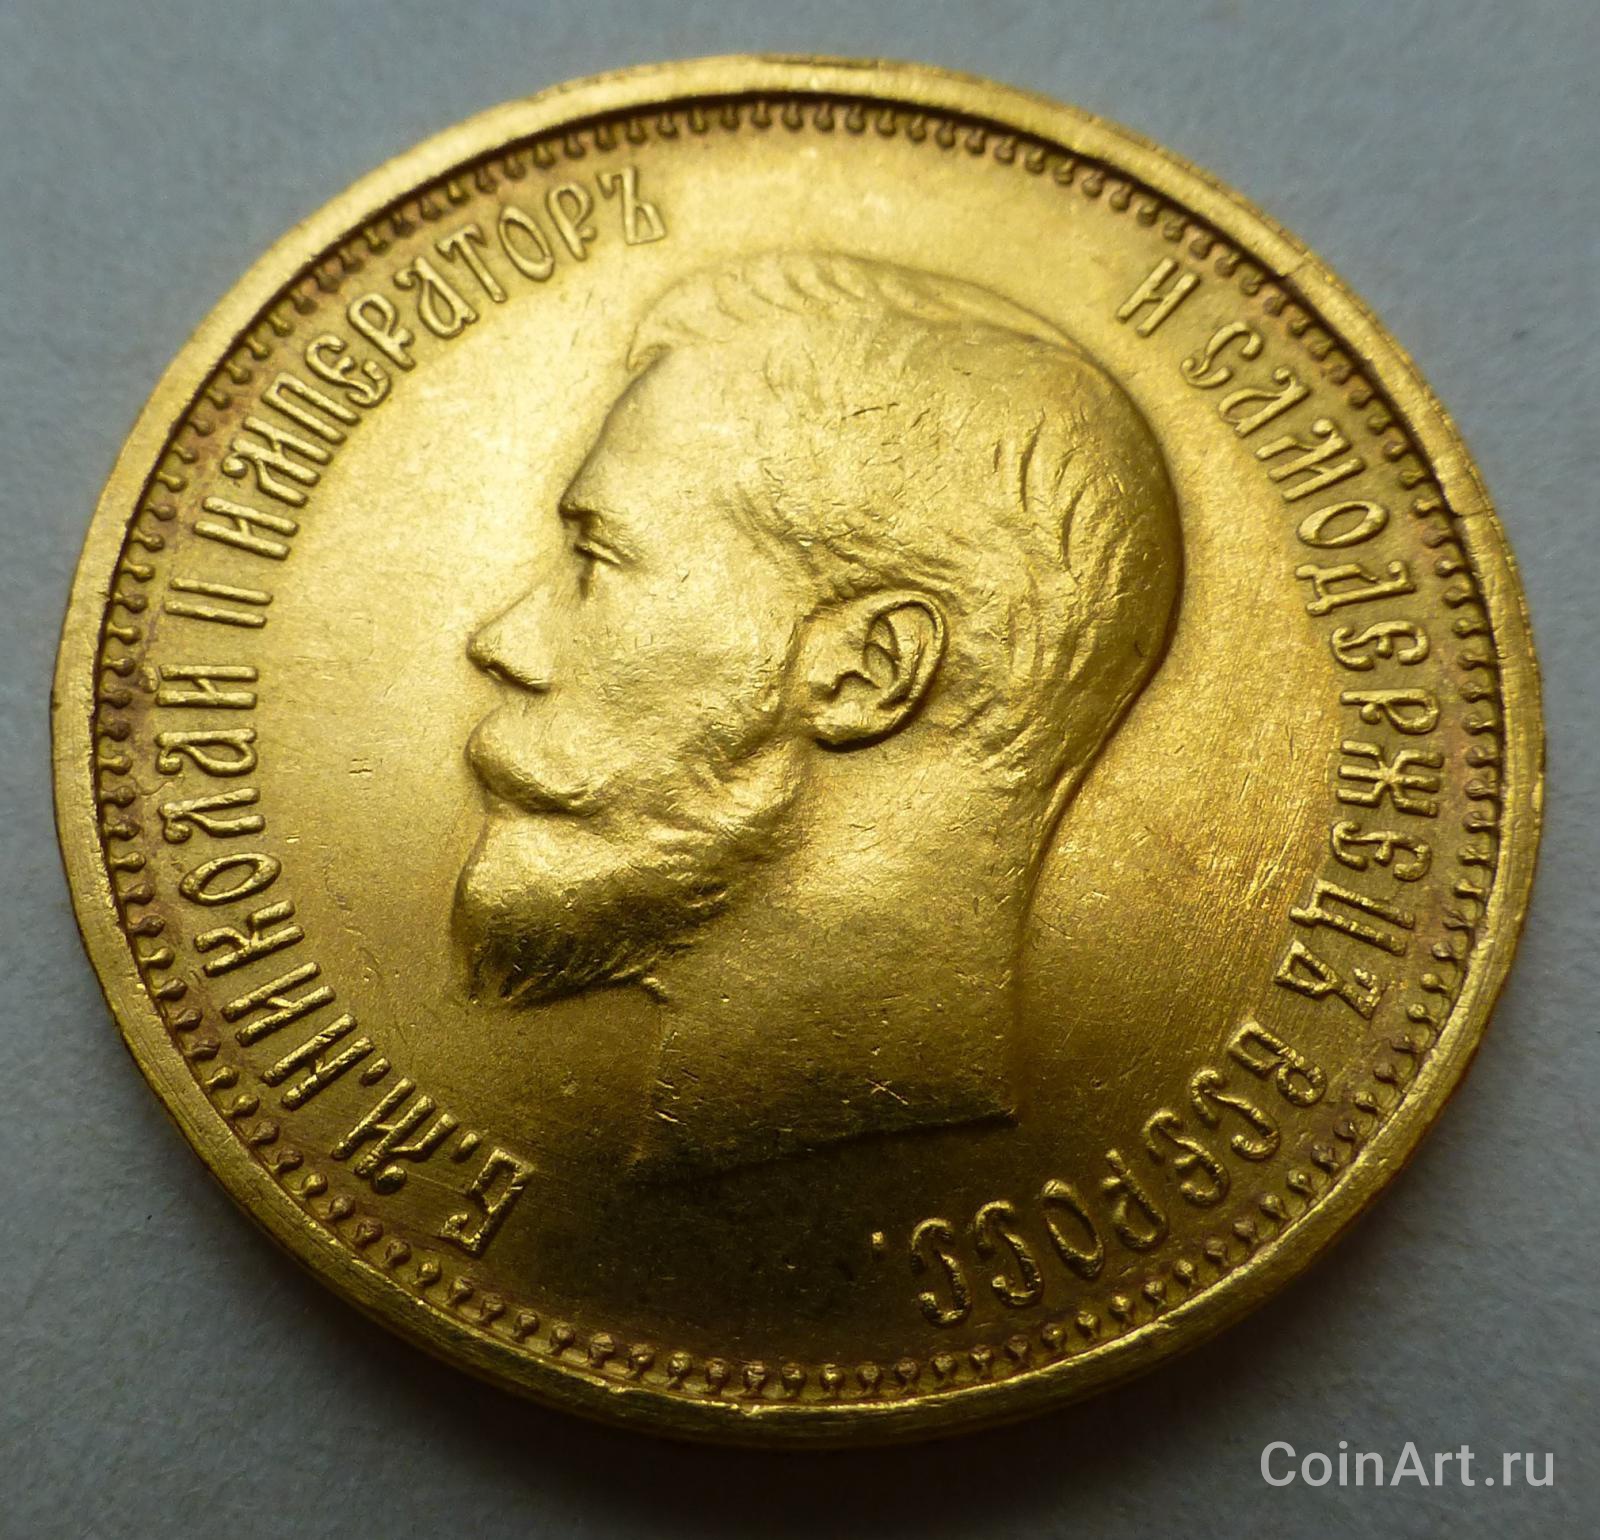 Золотой рубль Витте. Купить 10 рублей 1899 года золото цена на сегодня.